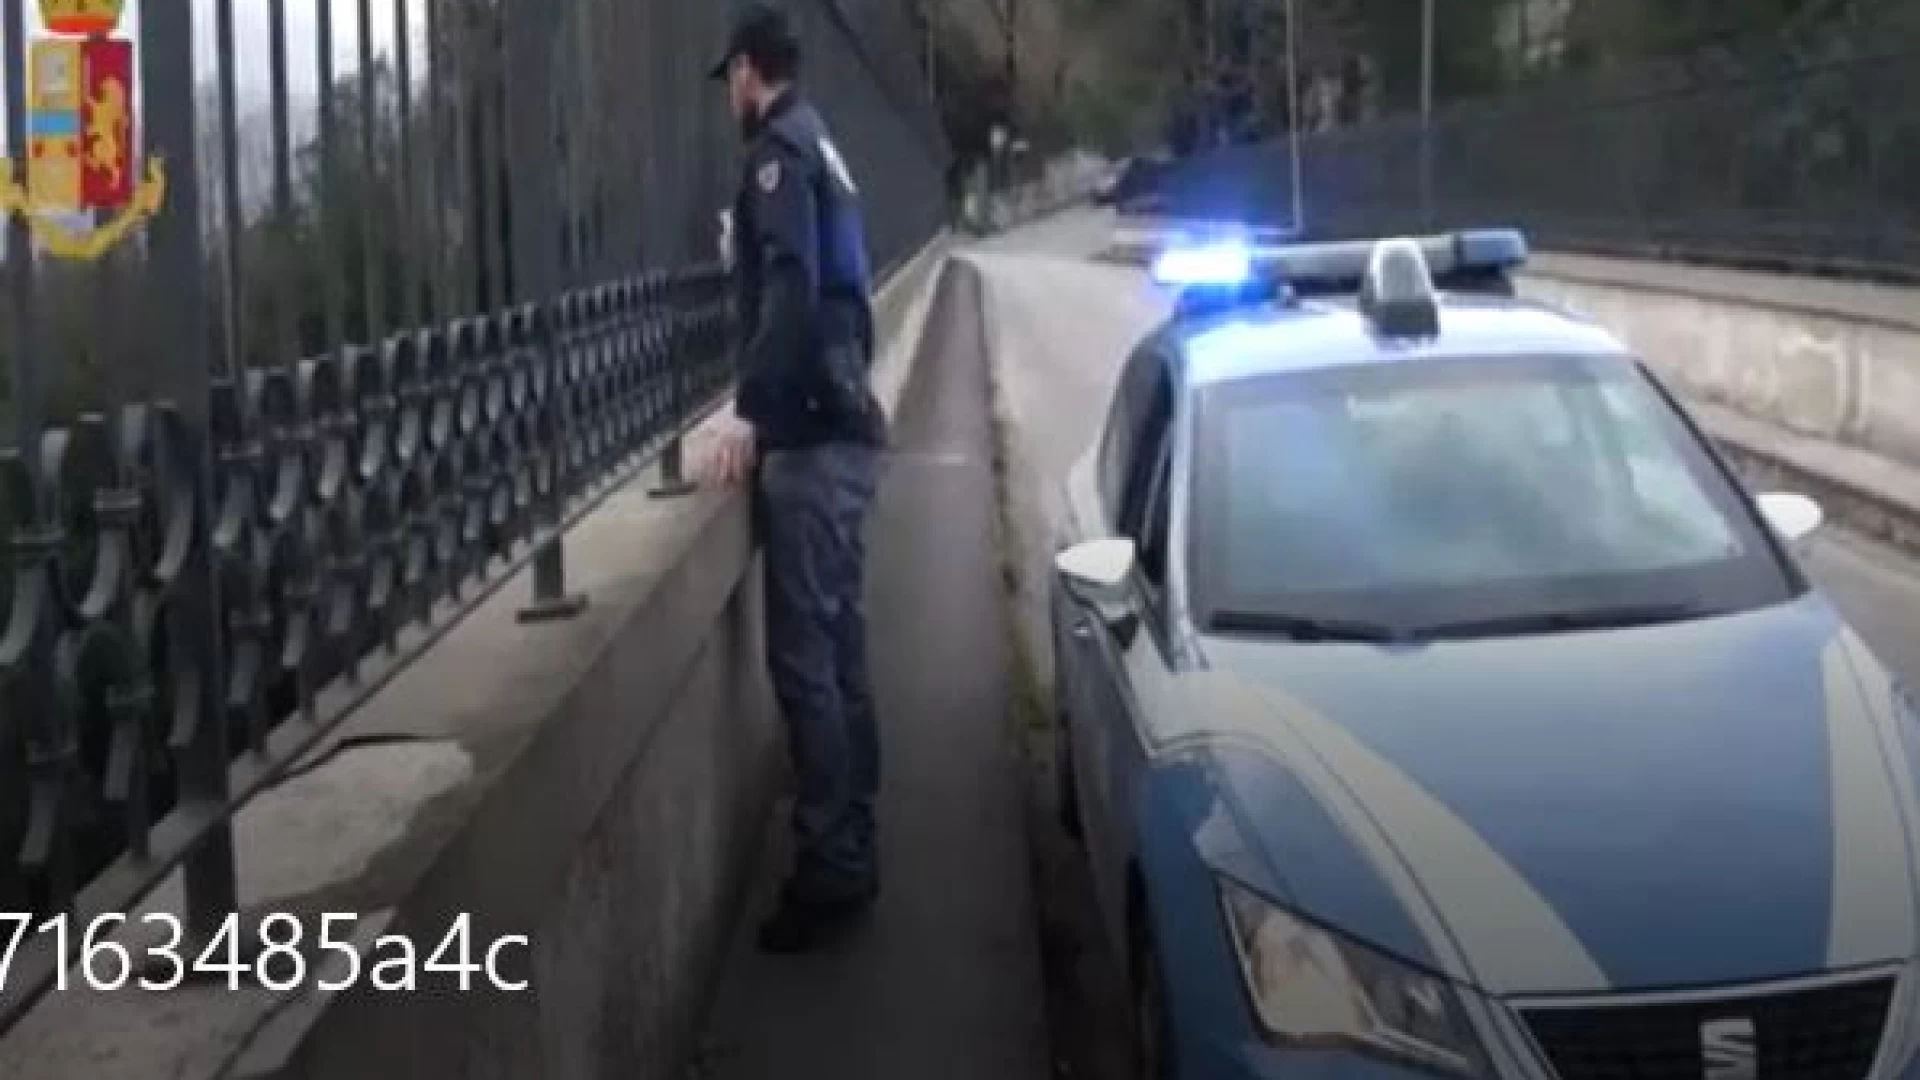 Polizia di Stato di Isernia:la Polizia sventa il suicidio di una giovane donna. Il video della Questura di Isernia